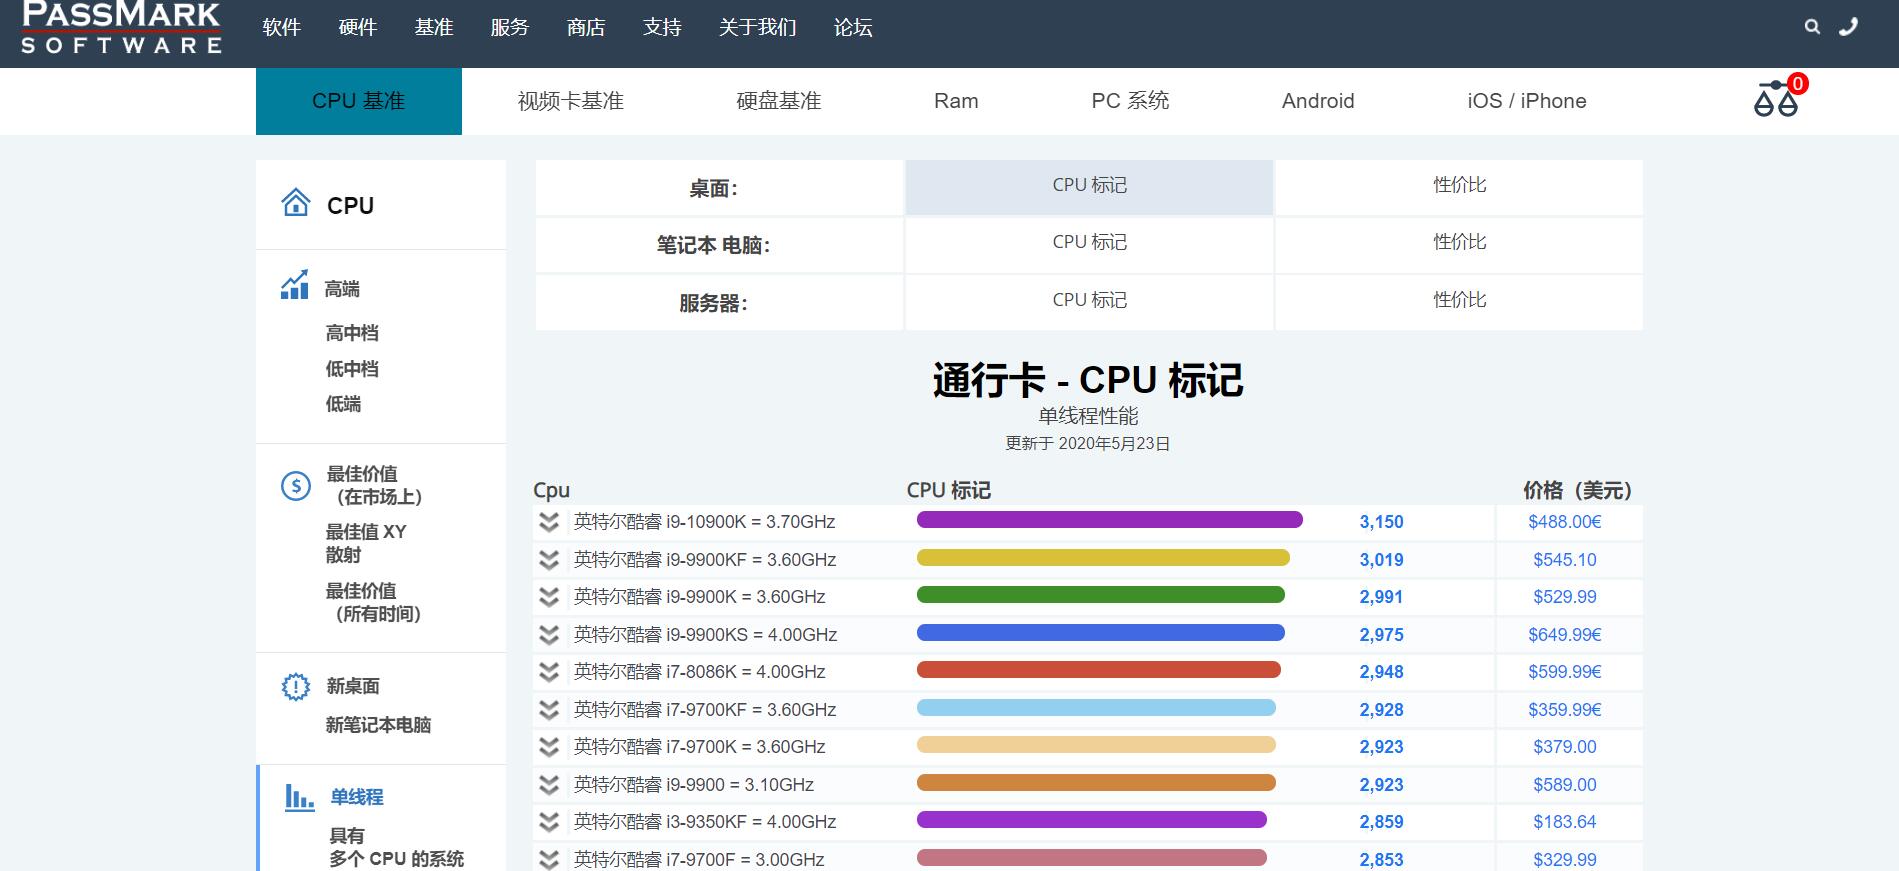 最新CPU排名梯子网站:PASSMARK